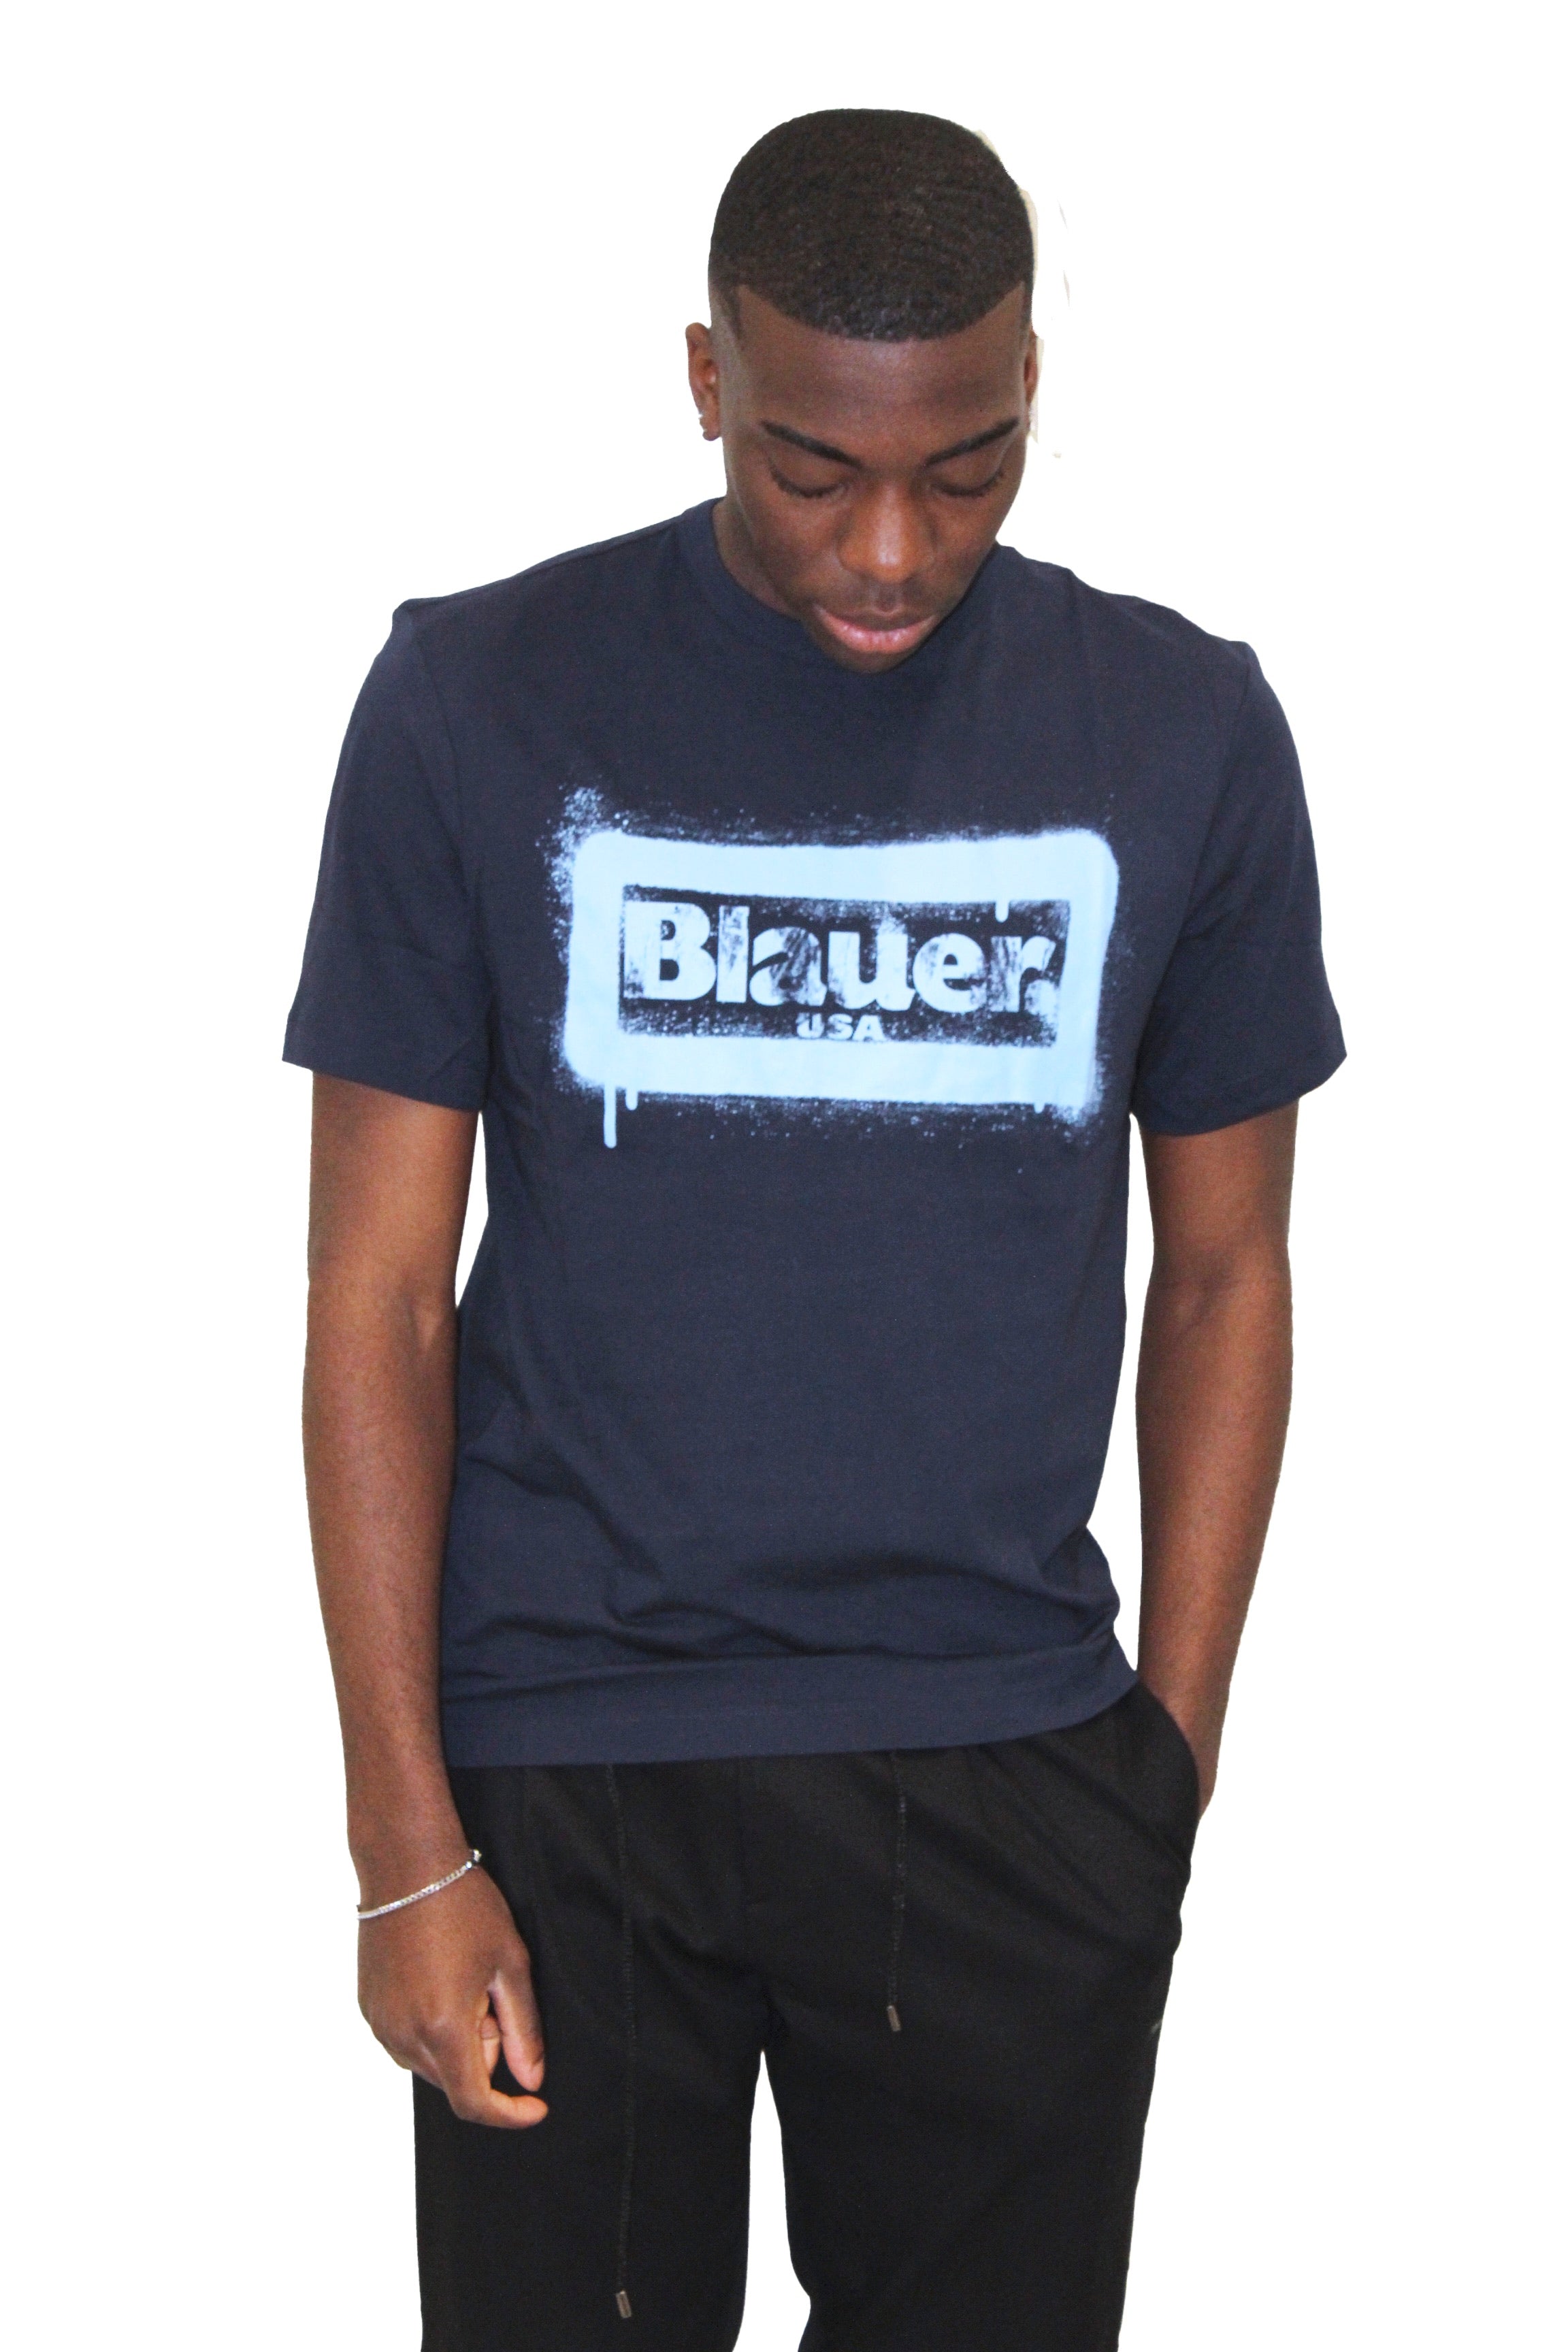 T-shirt blauer